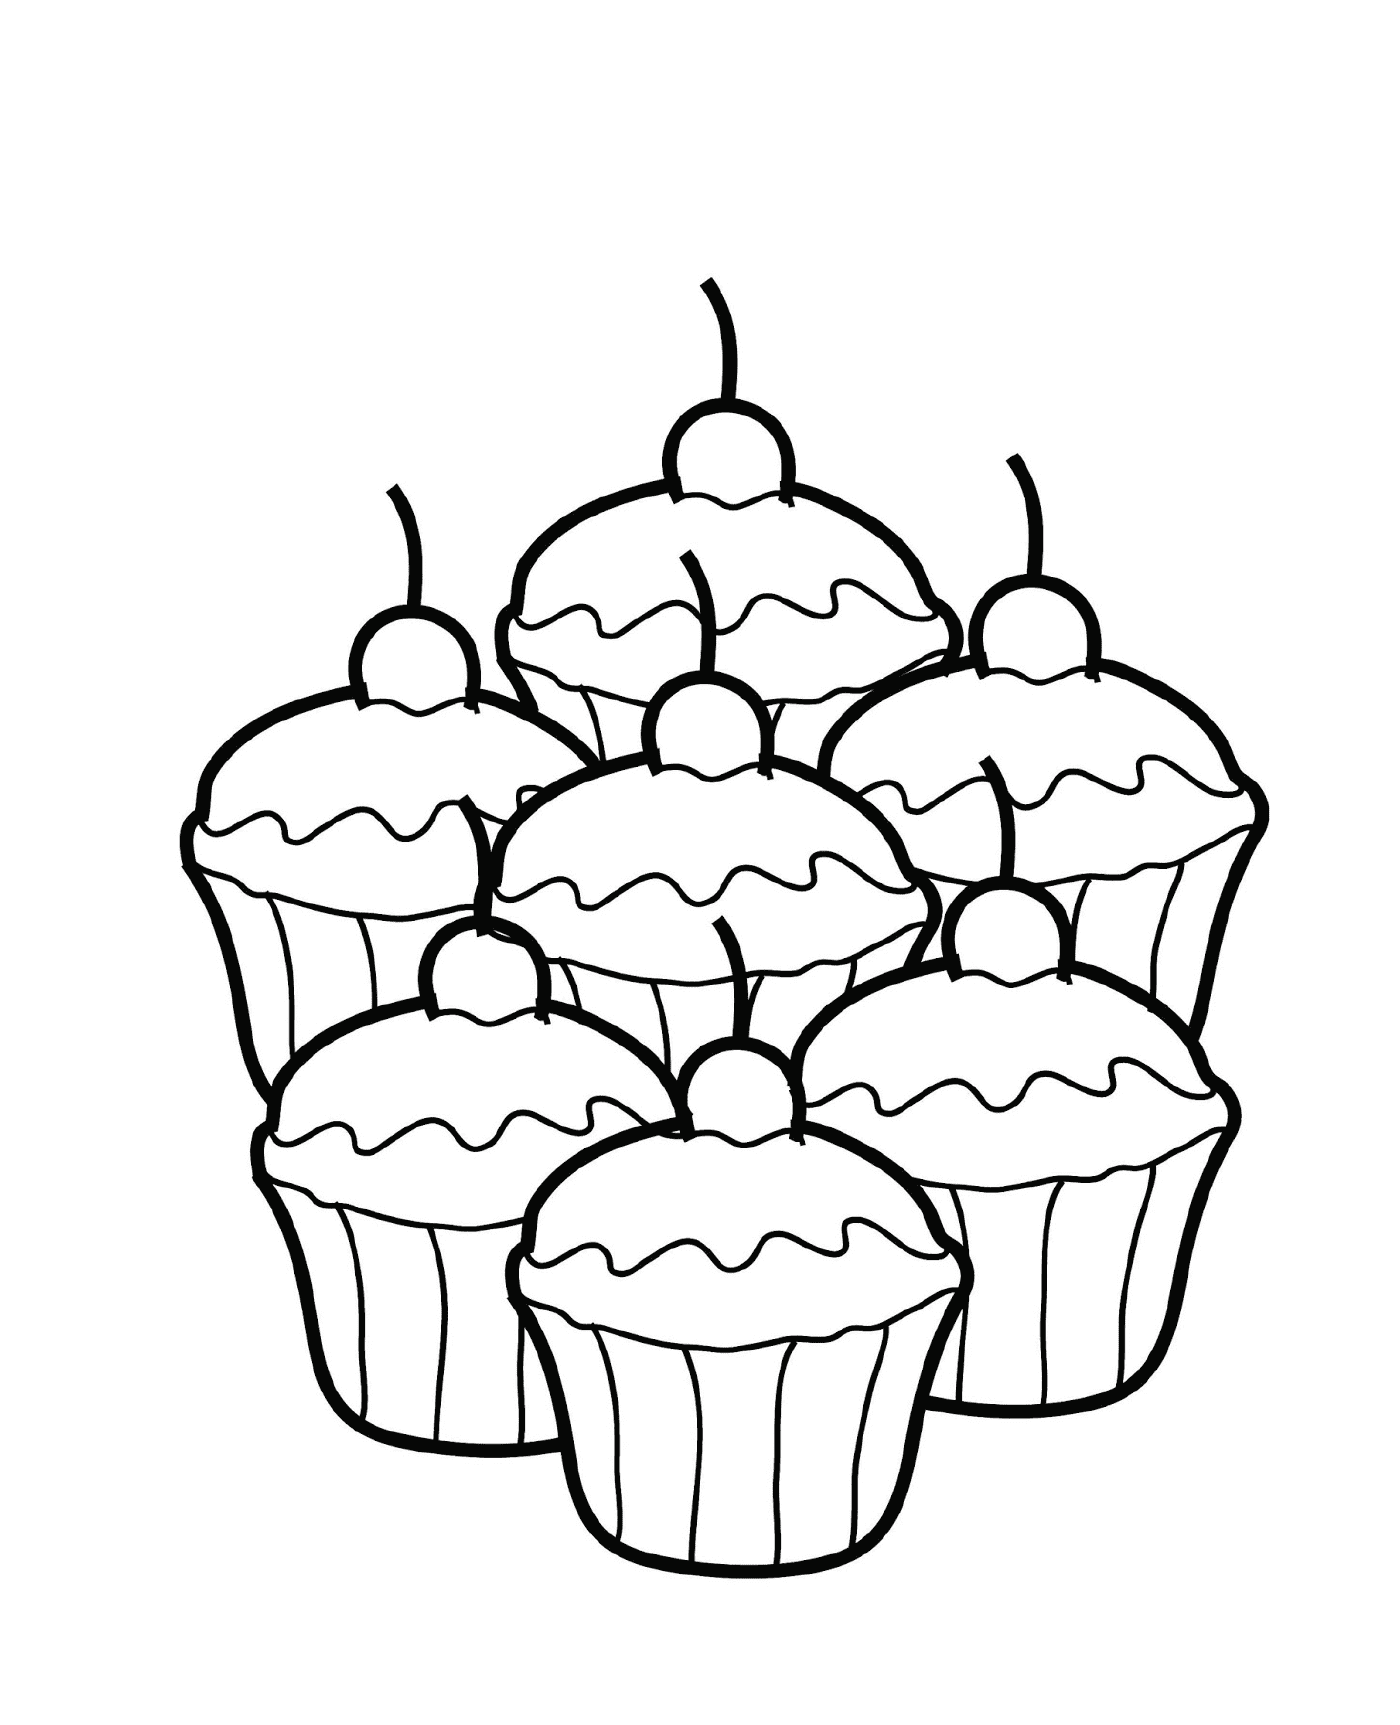  Quatro cupcakes juntos 